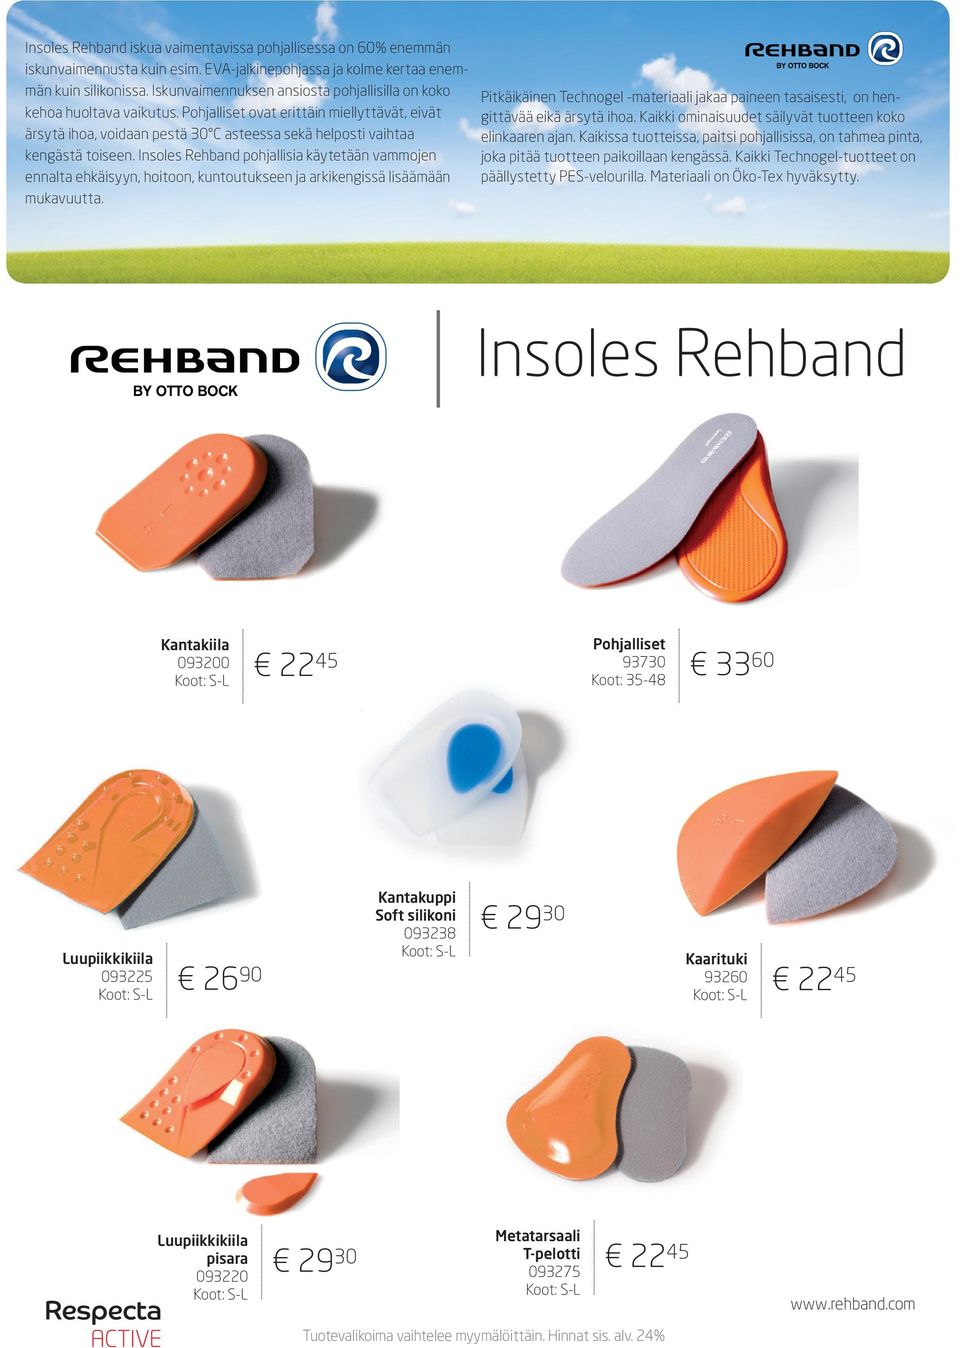 Insoles Rehband pohjallisia käytetään vammojen ennalta ehkäisyyn, hoitoon, kuntoutukseen ja arkikengissä lisäämään mukavuutta.